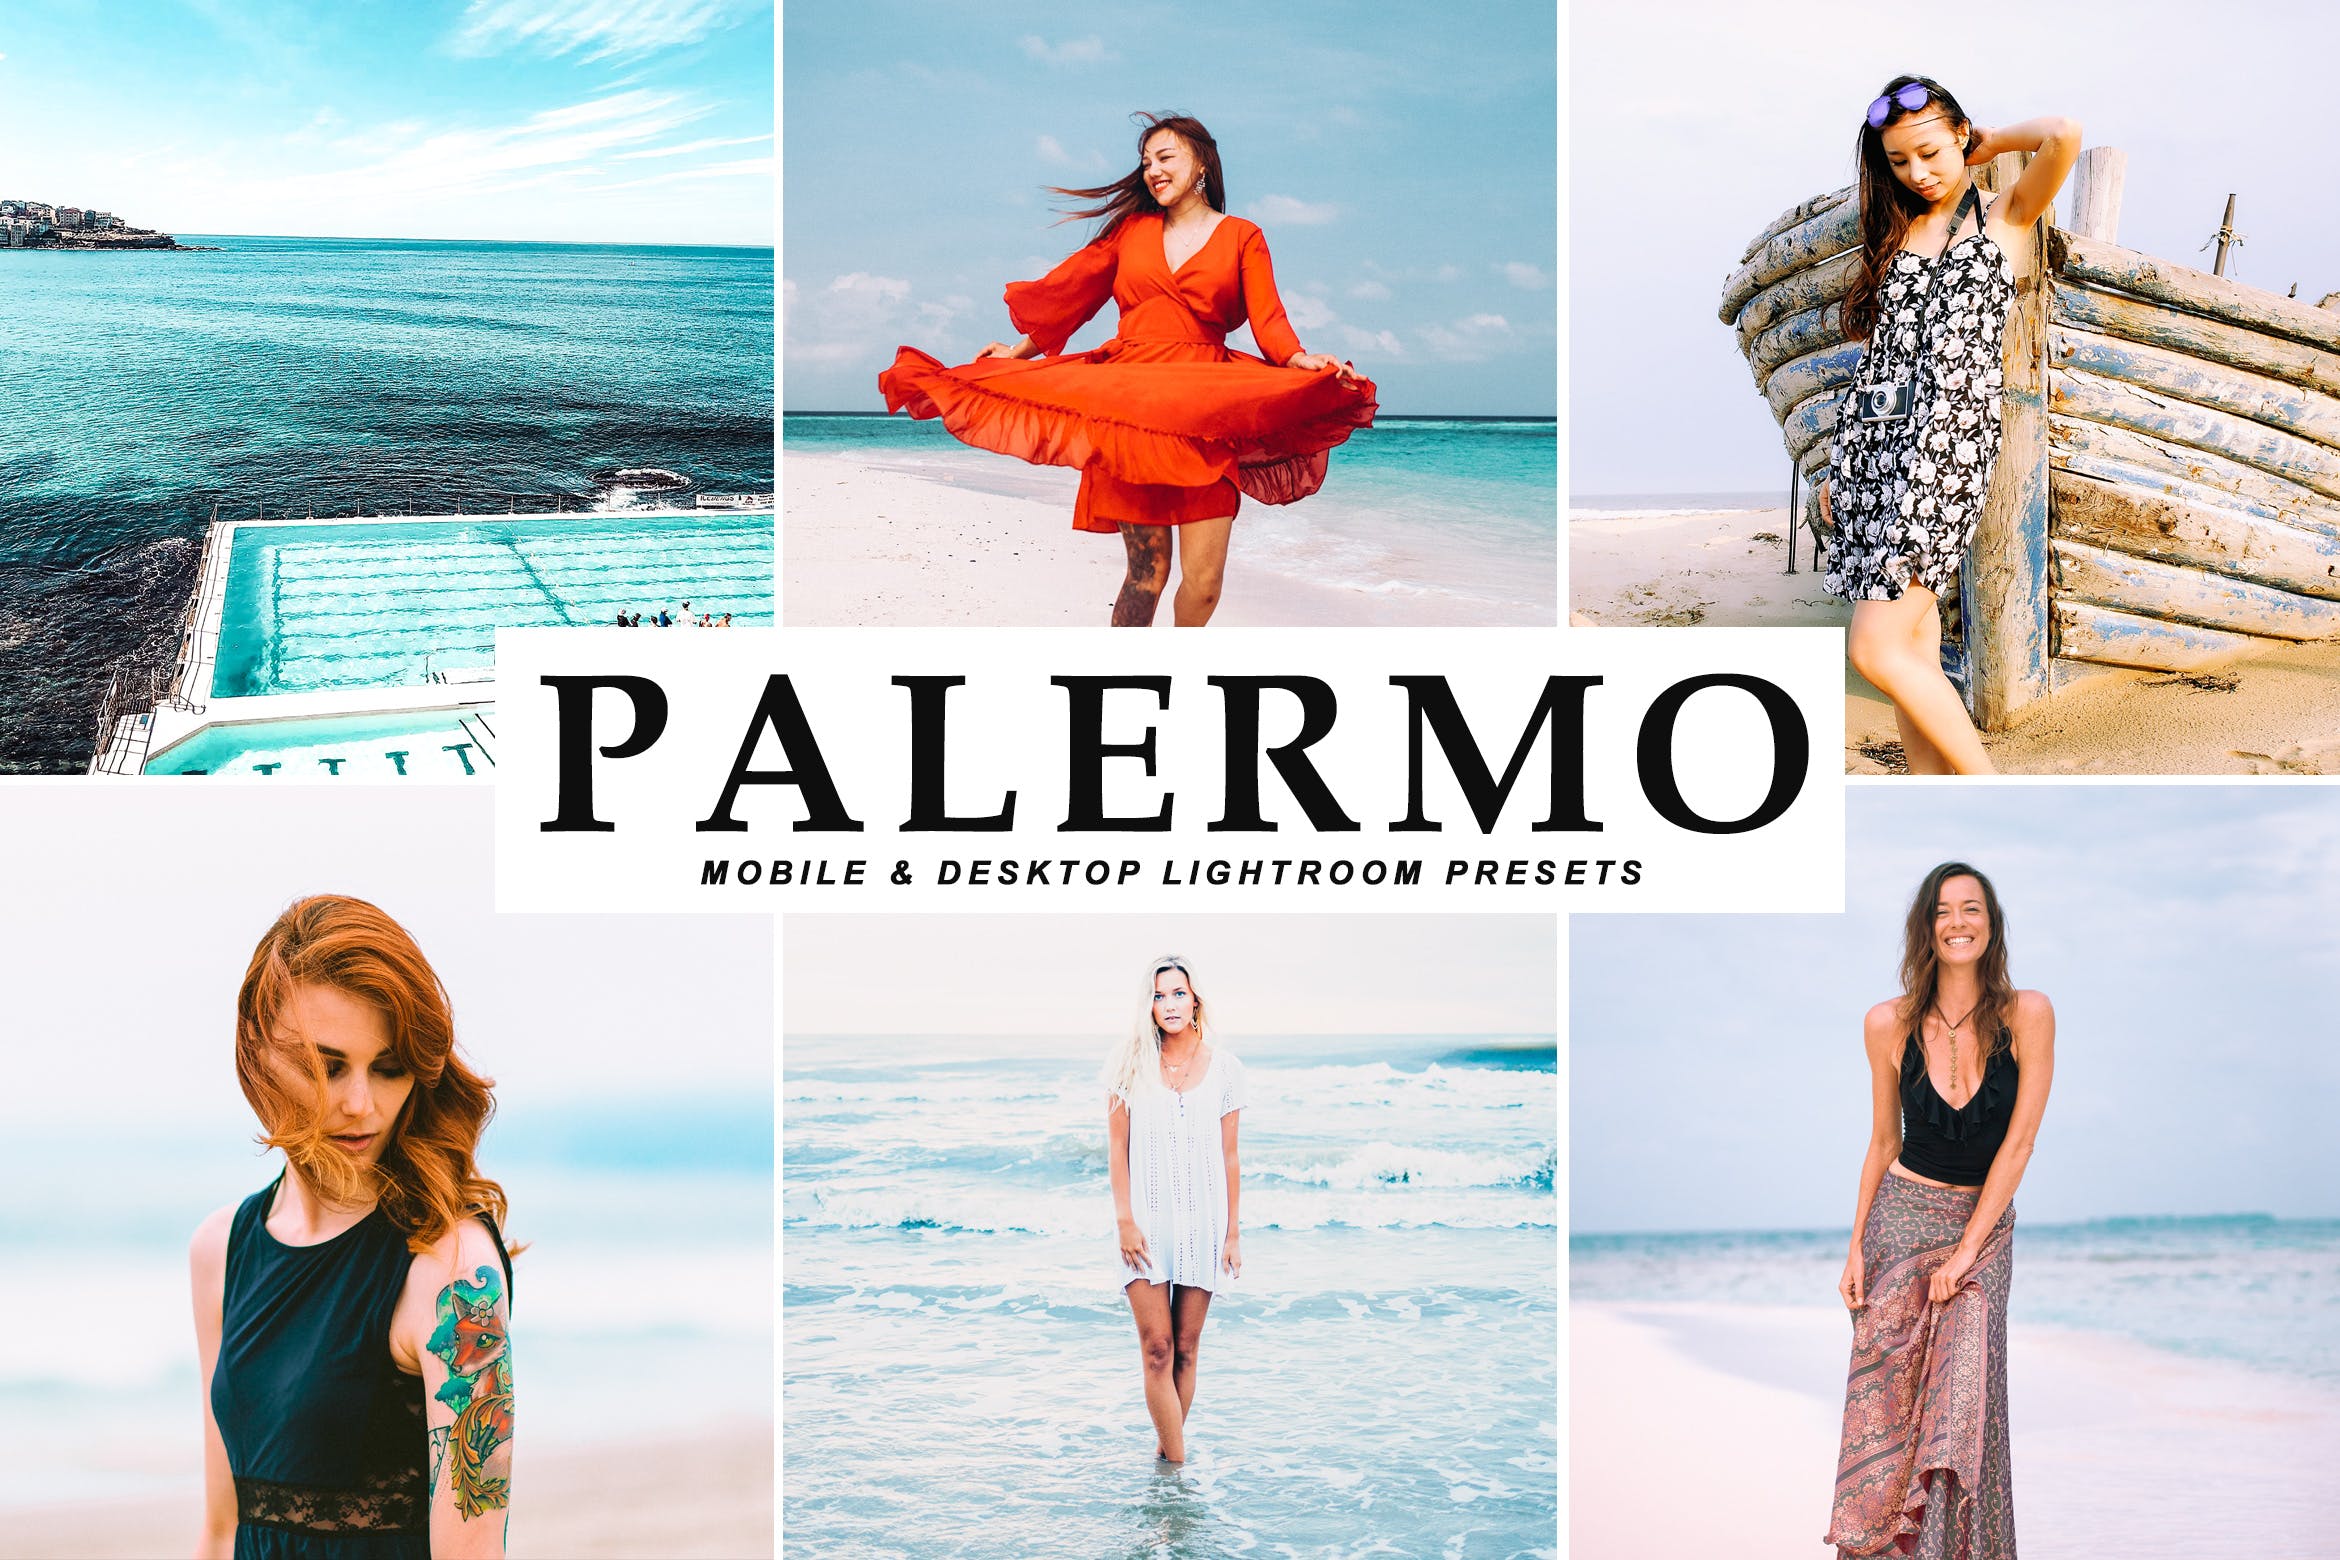 沙滩海岛阳光照片调色滤镜大洋岛精选LR预设 Palermo Mobile & Desktop Lightroom Presets插图